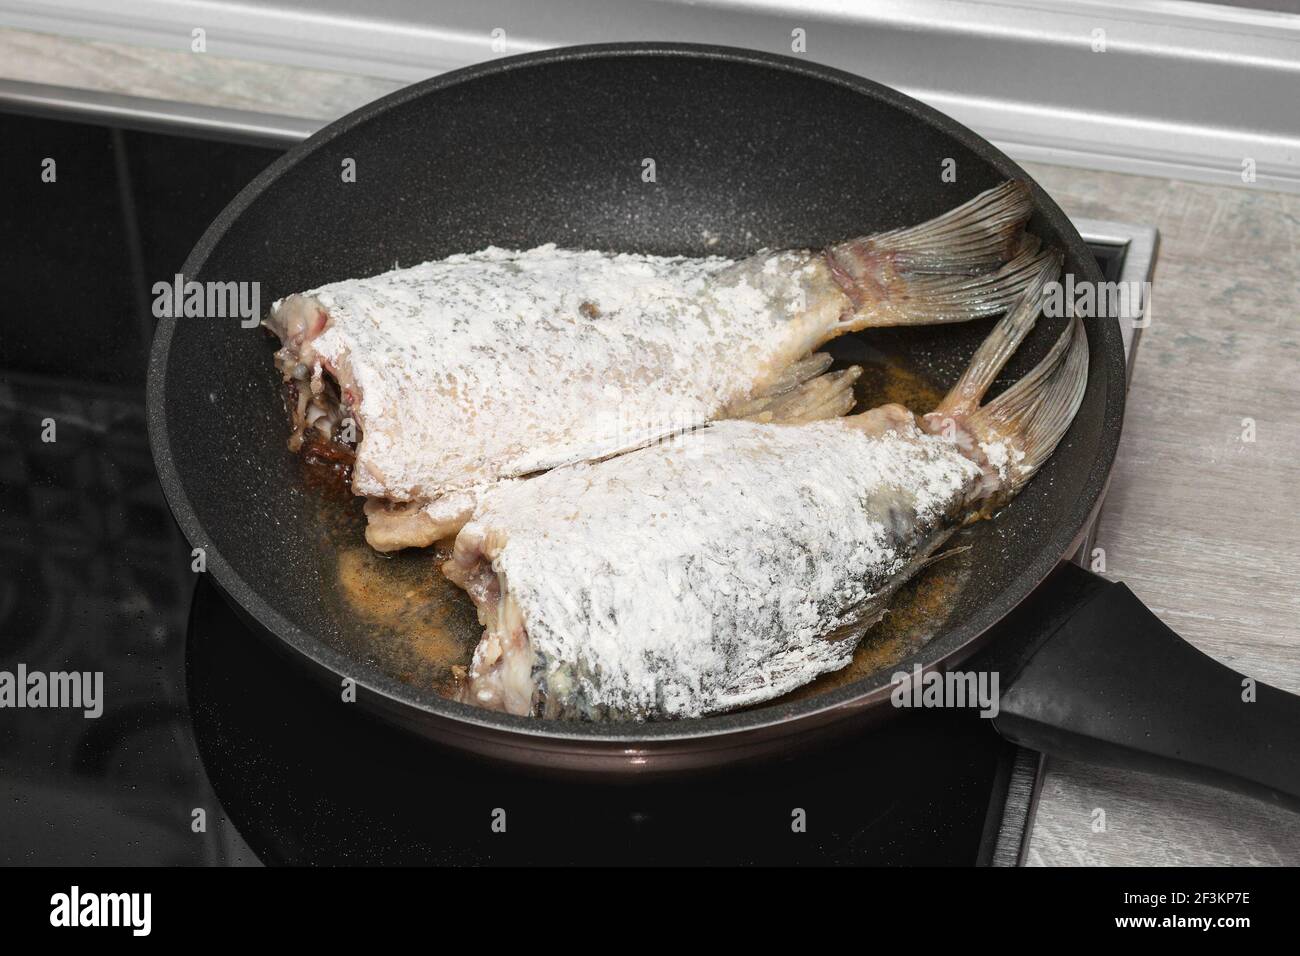 Primo piano di carpa crogiana di pesce fritta in una padella in una cucina casalinga. Pesce, sbucciato per friggere. Foto Stock